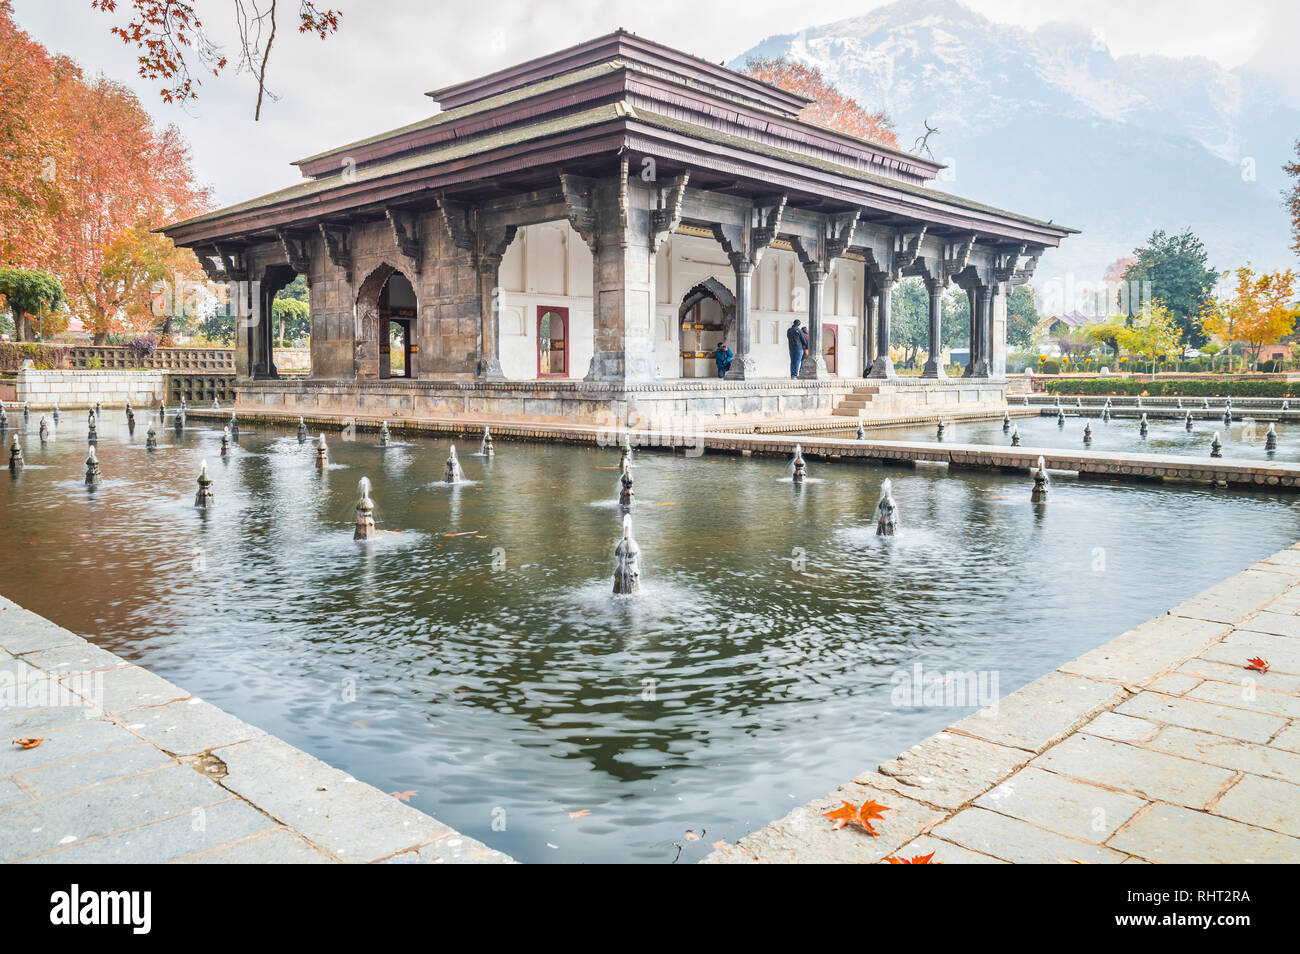 Vista oblicua de Mughal edificio patrimonial con reflexión en la piscina durante el otoño en Shalimar Bagh Jardín Mughal de Cachemira Foto de stock